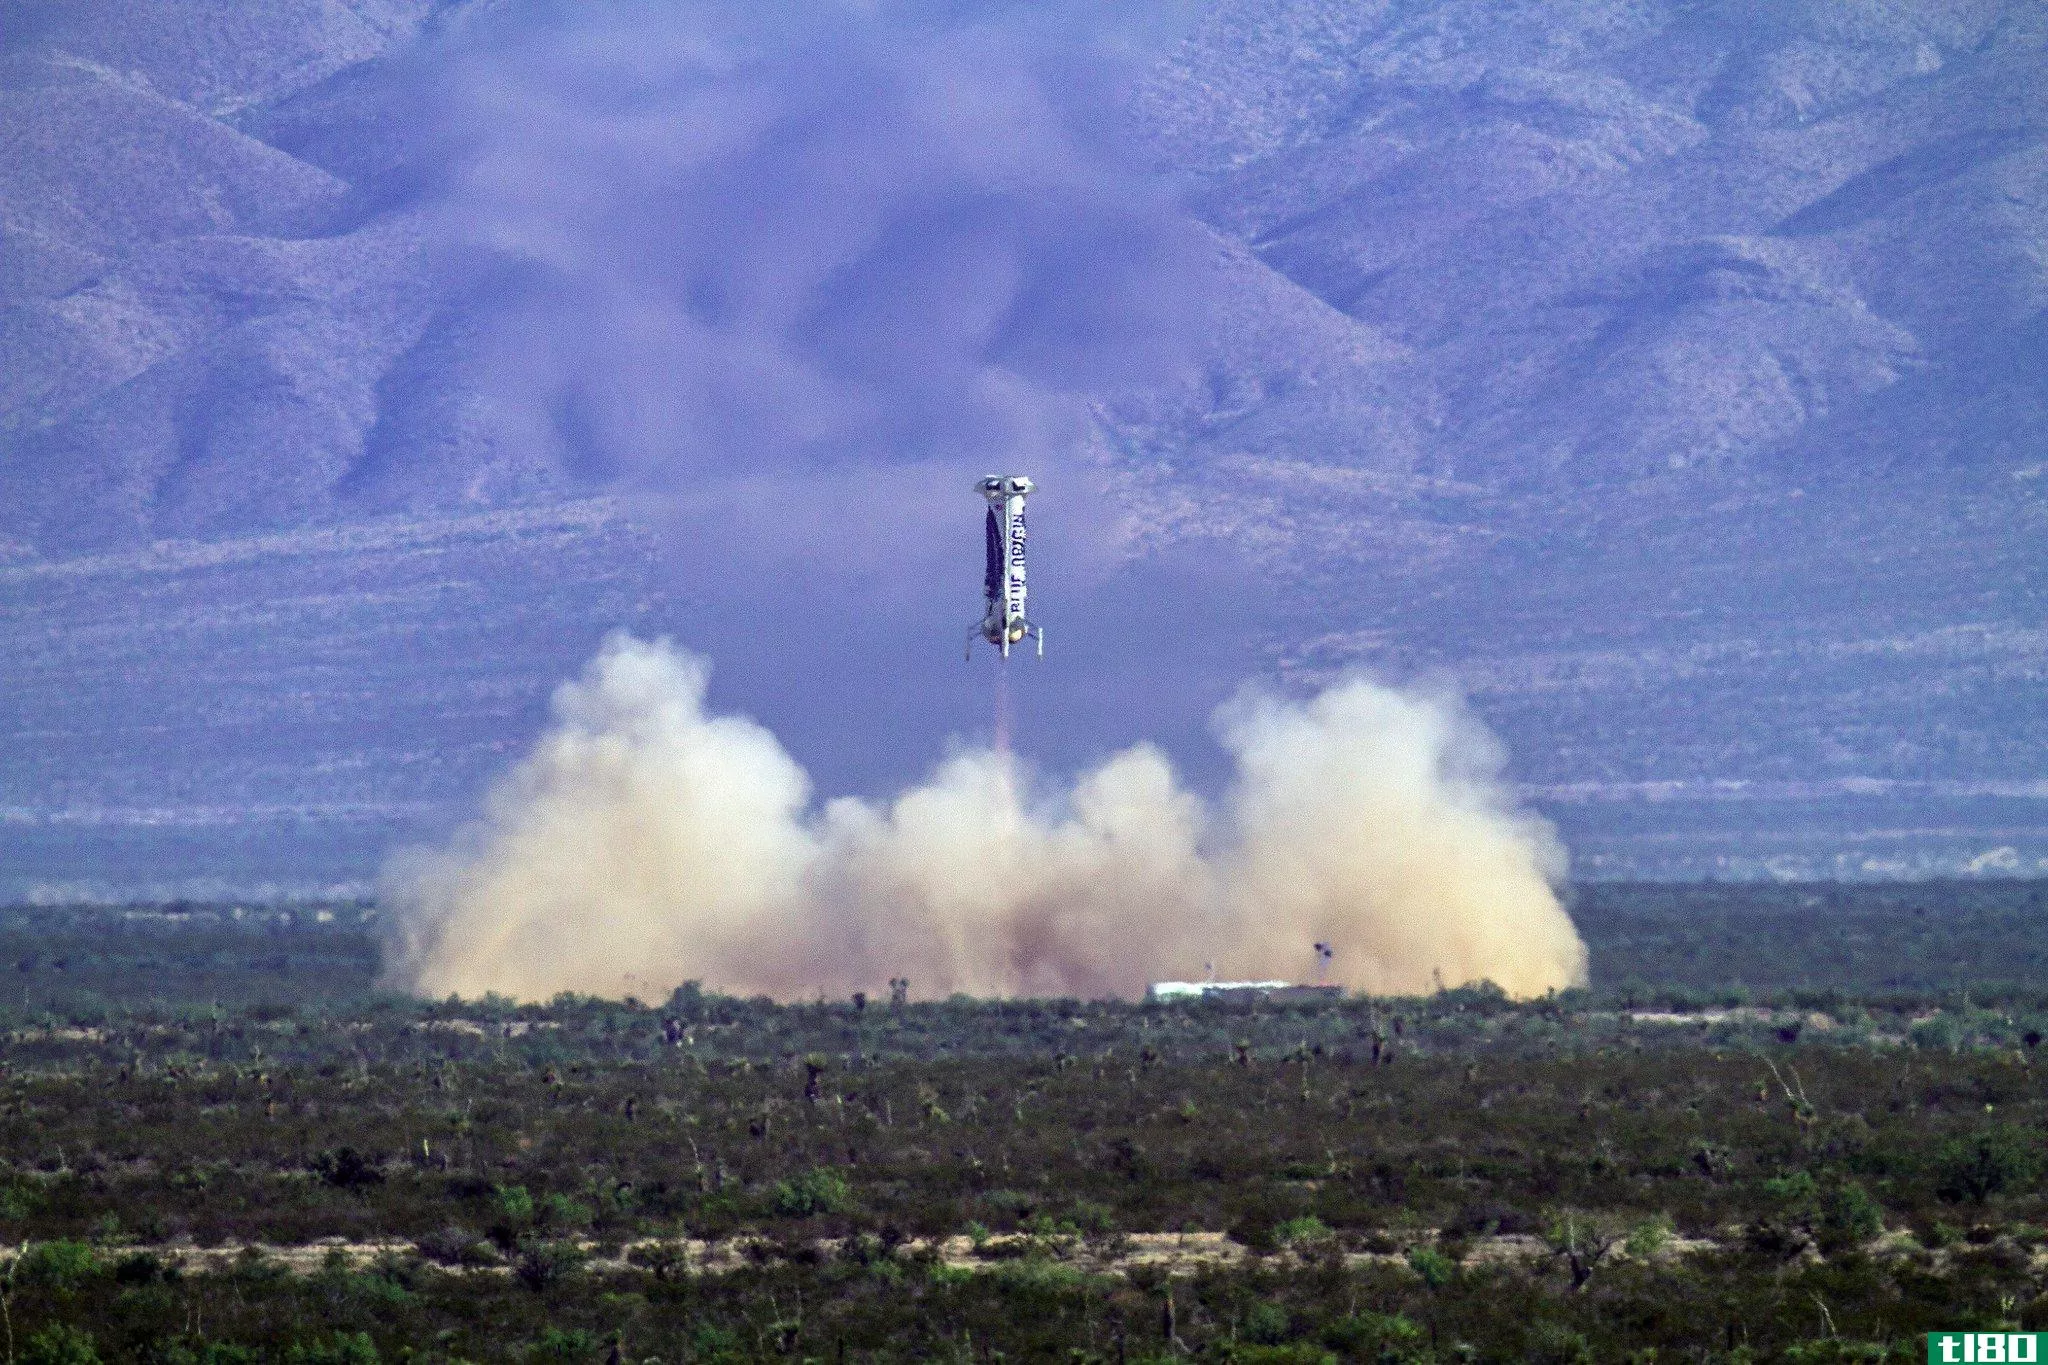 “蓝色起源”第四次安全发射并降落新型谢泼德火箭